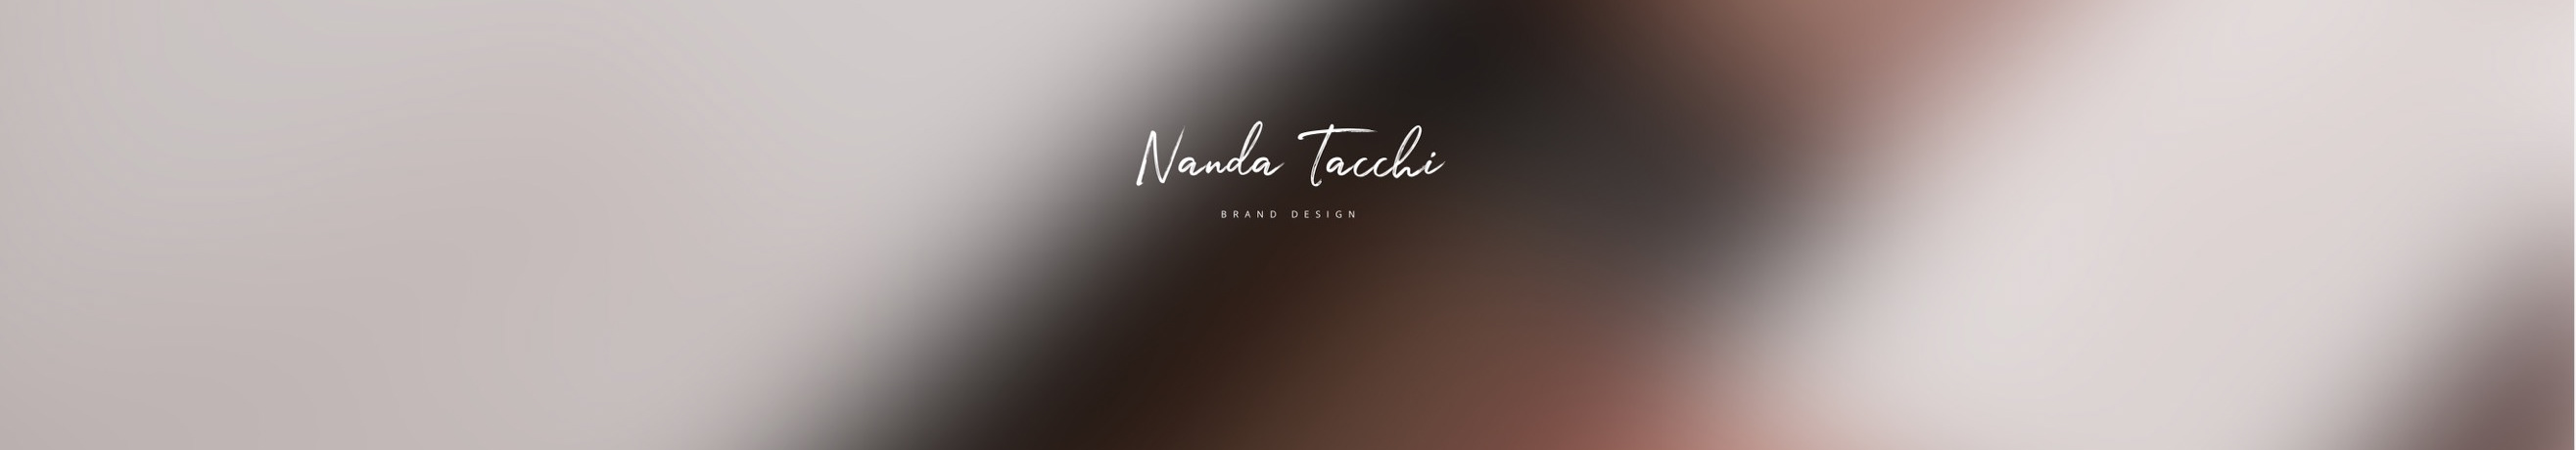 Nanda Tacchi のプロファイルバナー